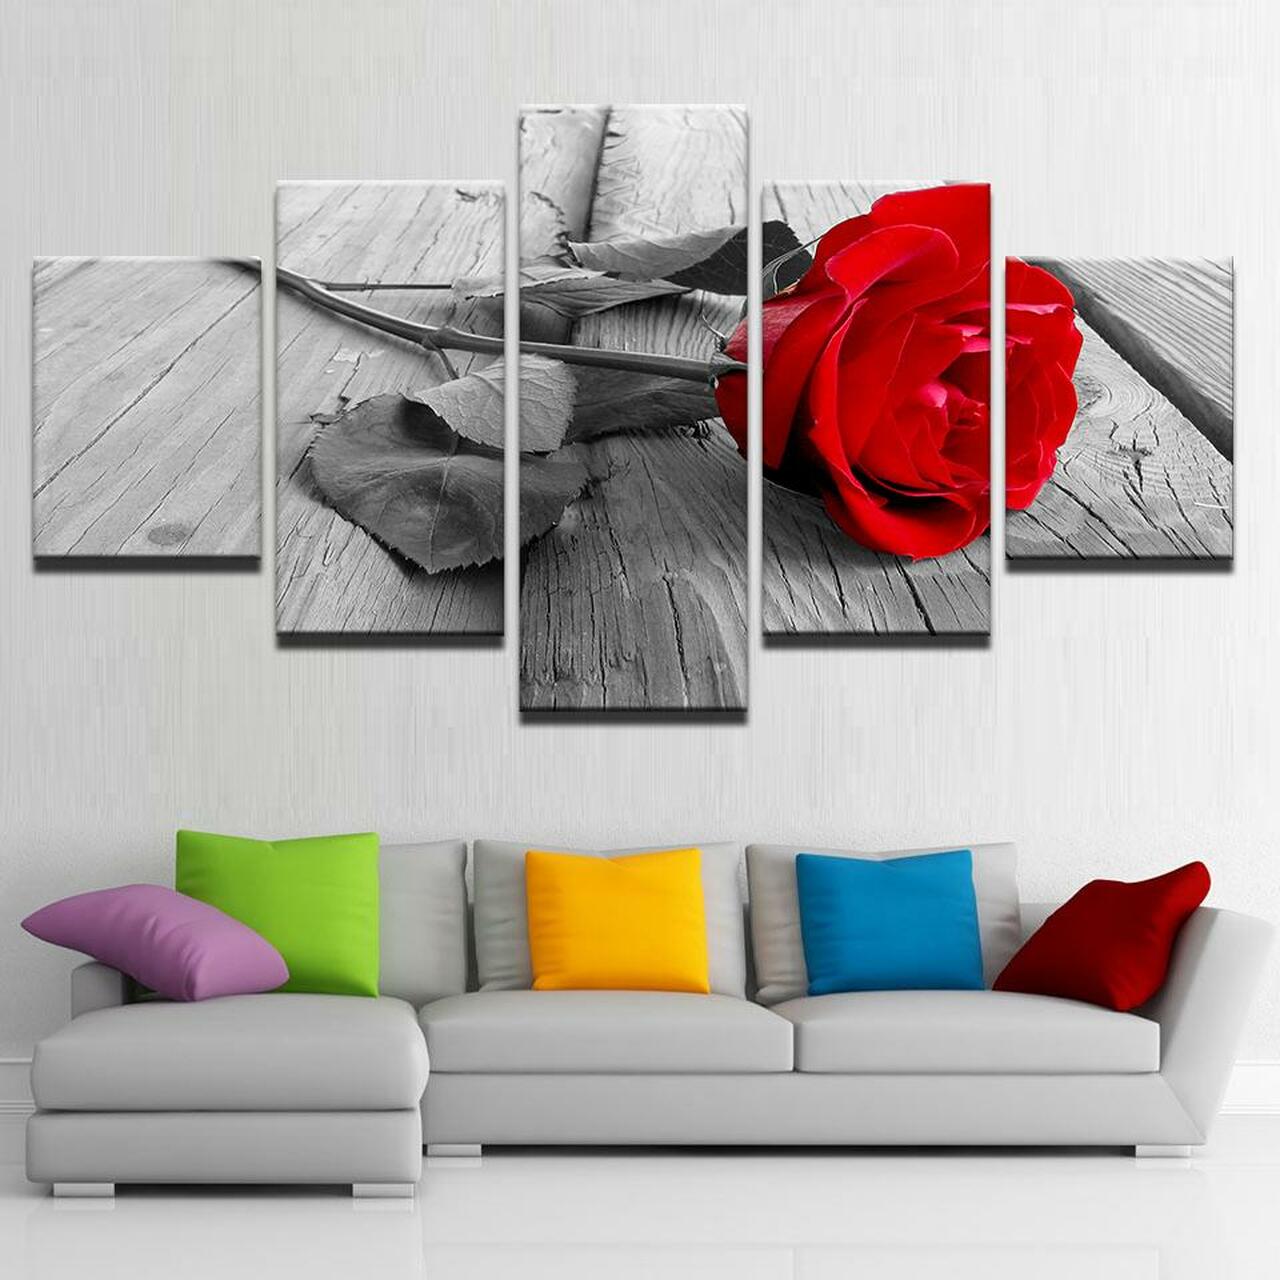 the red rose 5 pices peinture sur toile impression sur toile toile art pour la dcoration intrieurer8hb0